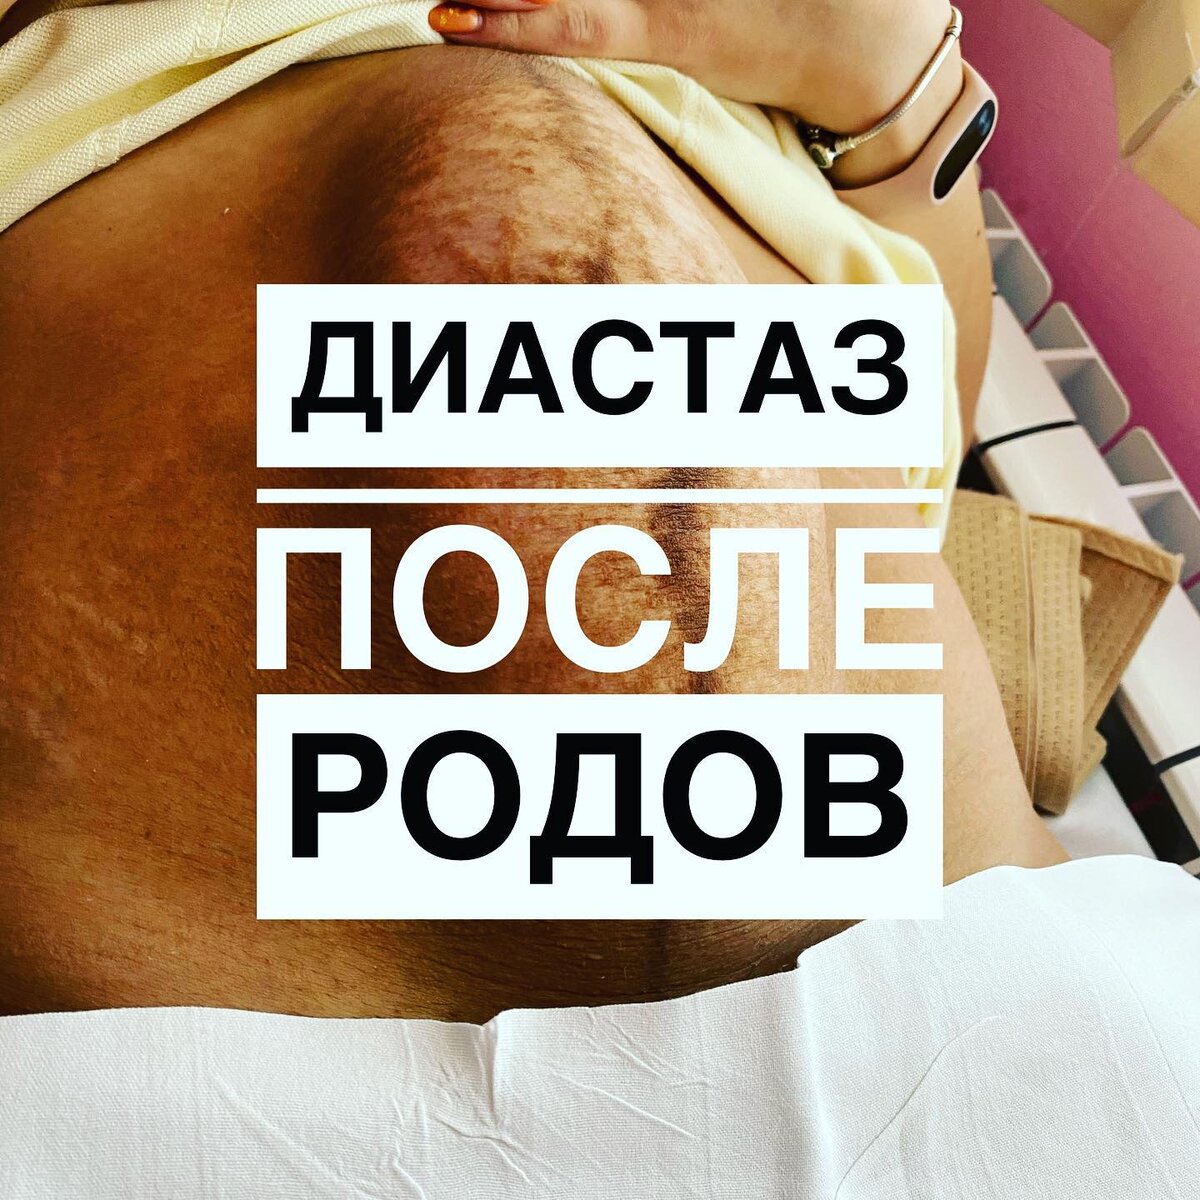 Секс после родов - когда можно и как предохраняться | Центр медицины плода на Чистых Прудах